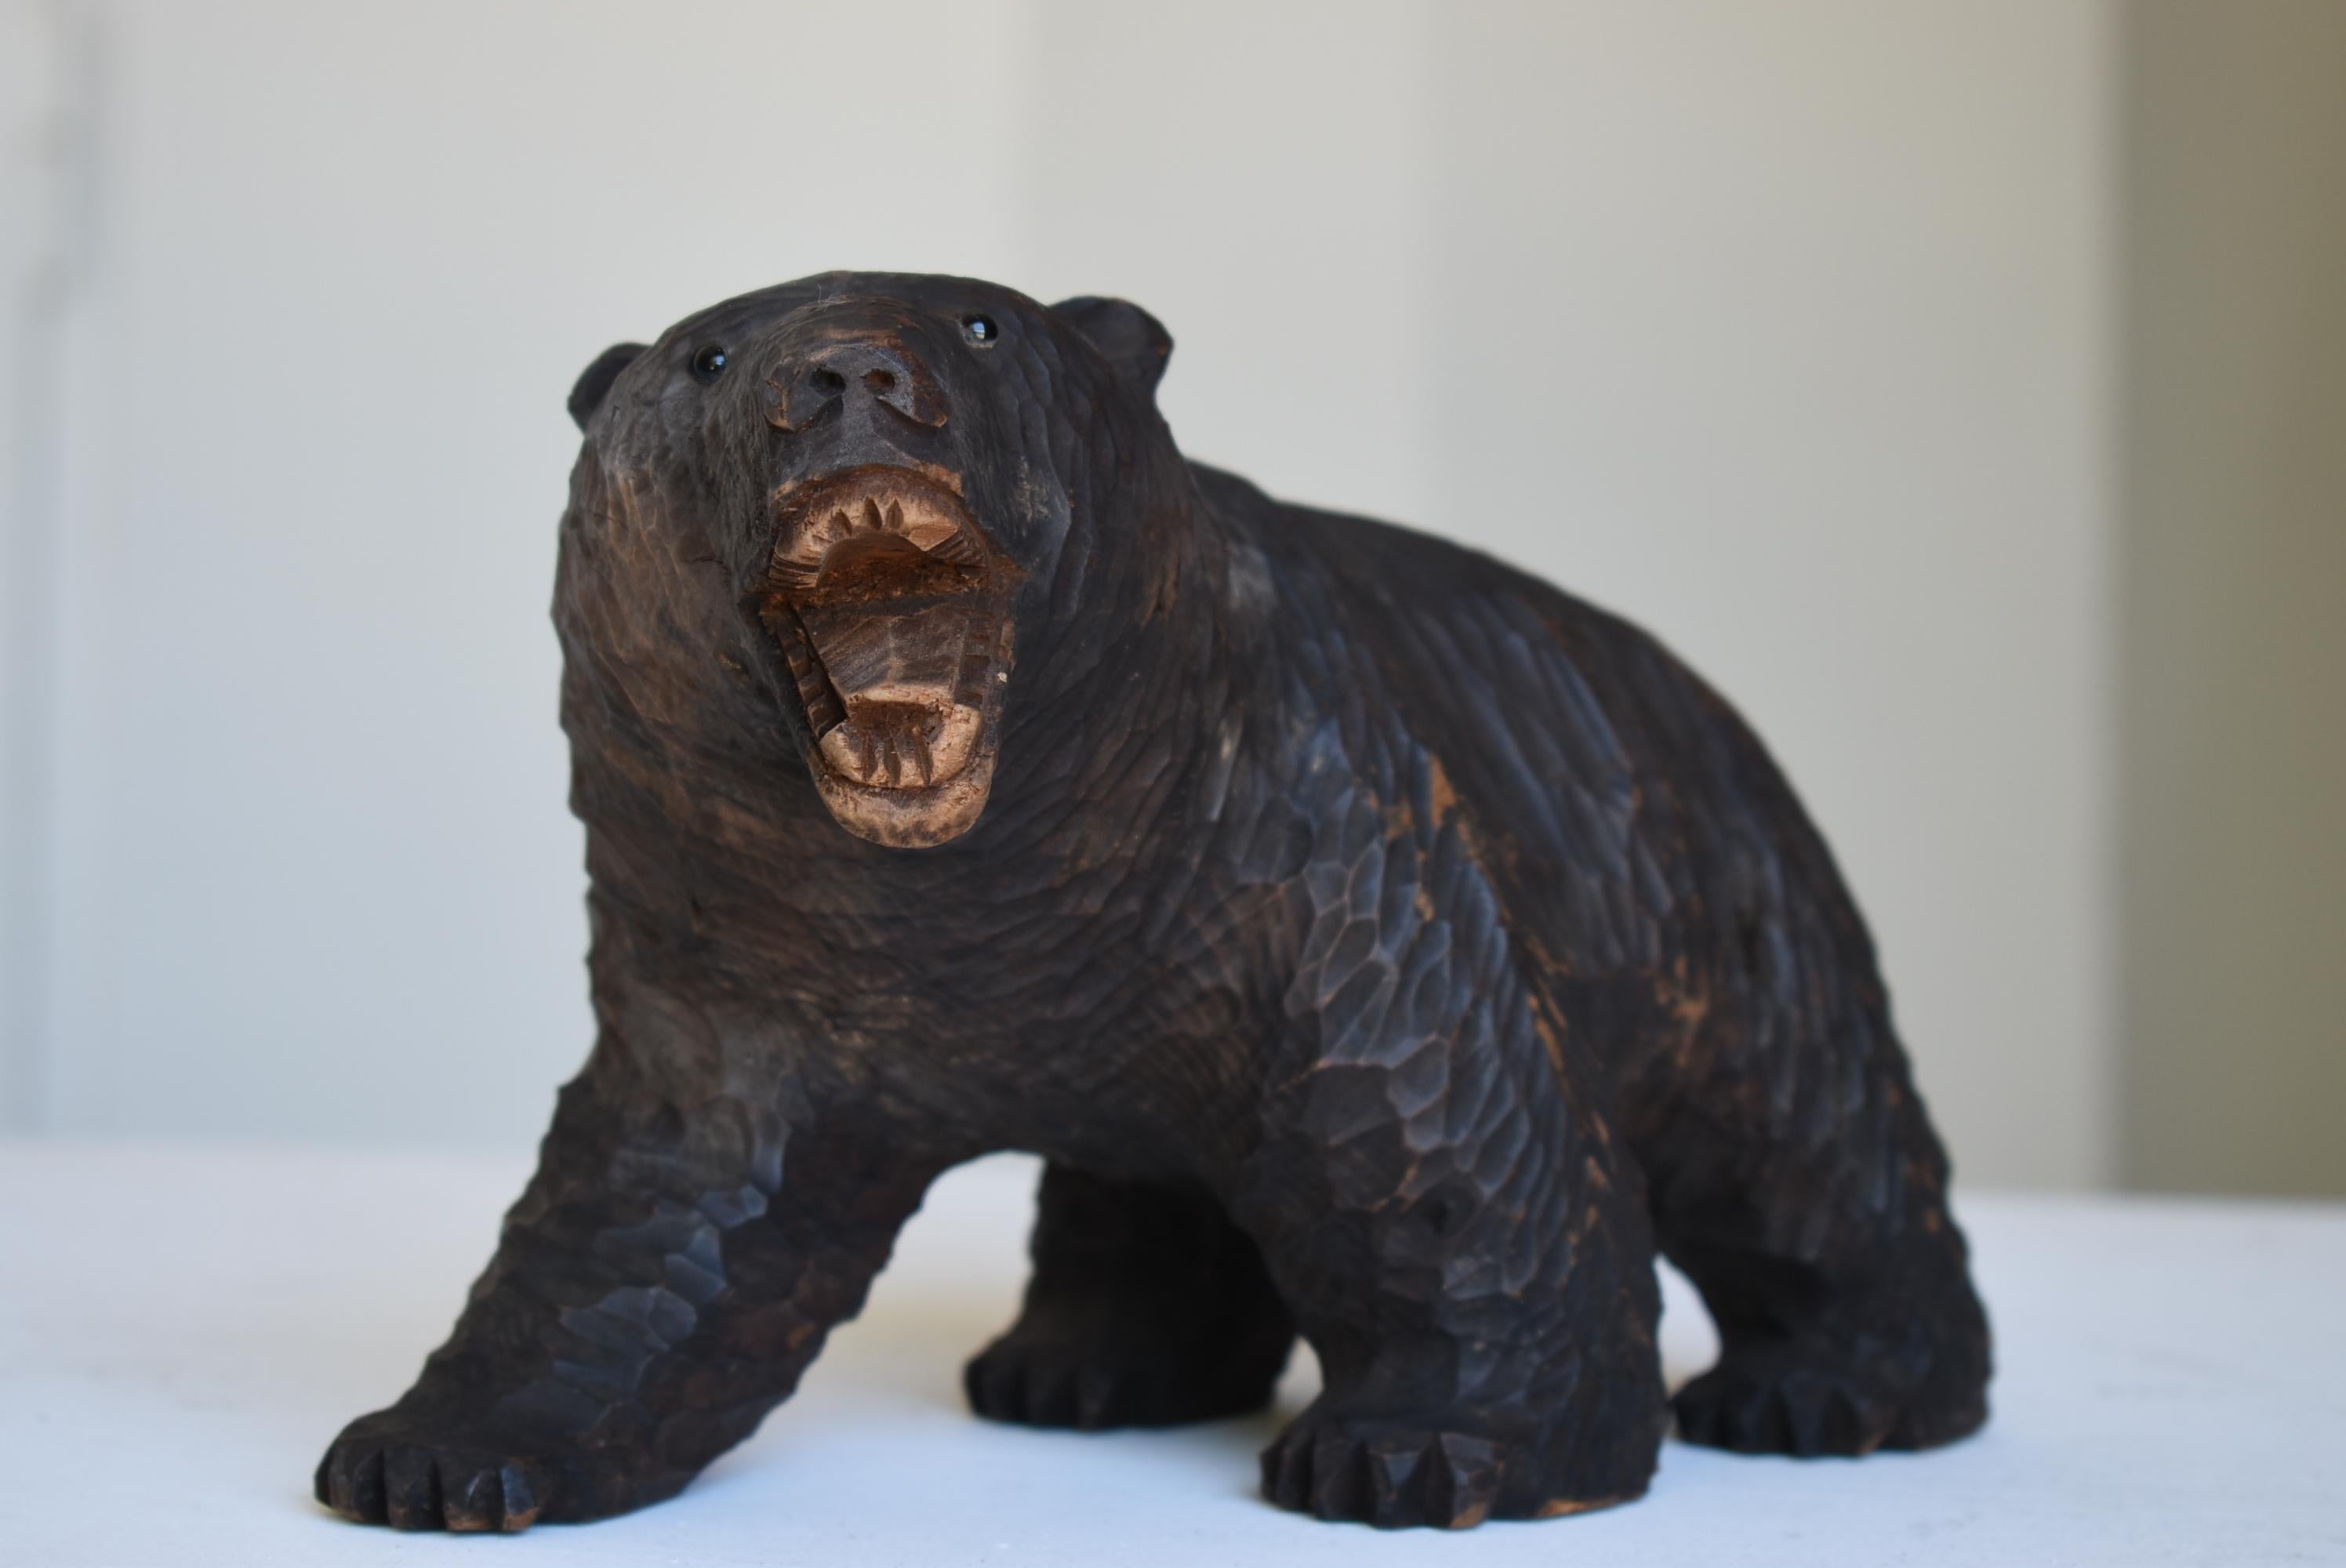 Es handelt sich um ein hölzernes Volkskunstwerk in Form eines Bären.
Hauptsächlich in Hokkaido hergestellt.
Es handelt sich um eine Holzschnitzerei aus den Jahren 1930 bis 1950.

Die Augen sind aus Glas.
Diese Art ist in Japan selten.

Ein